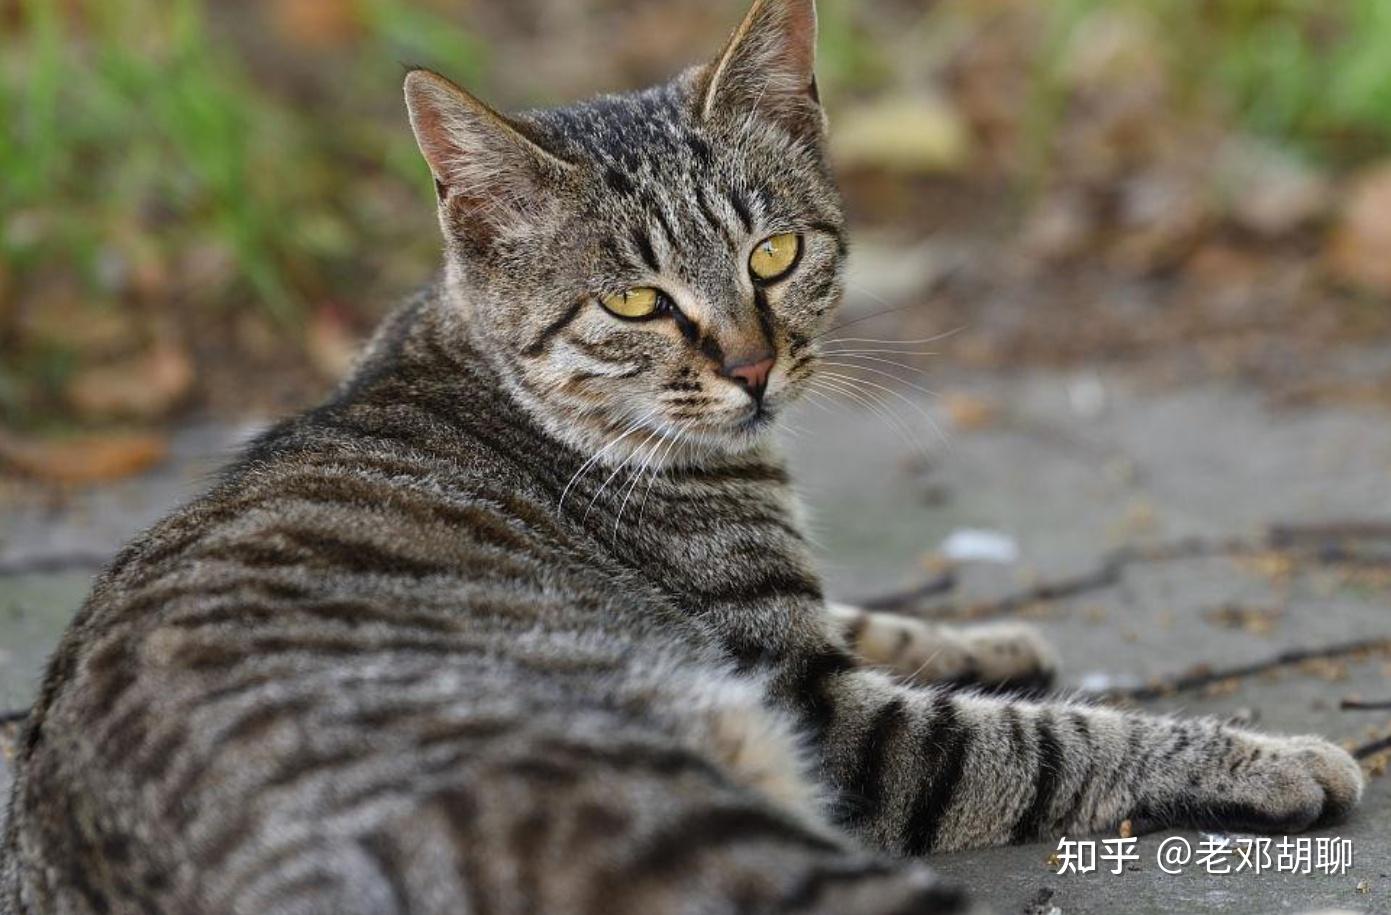 中国狸花猫也被称为花斑猫,是中国传统的家猫品种,是一种外形优美